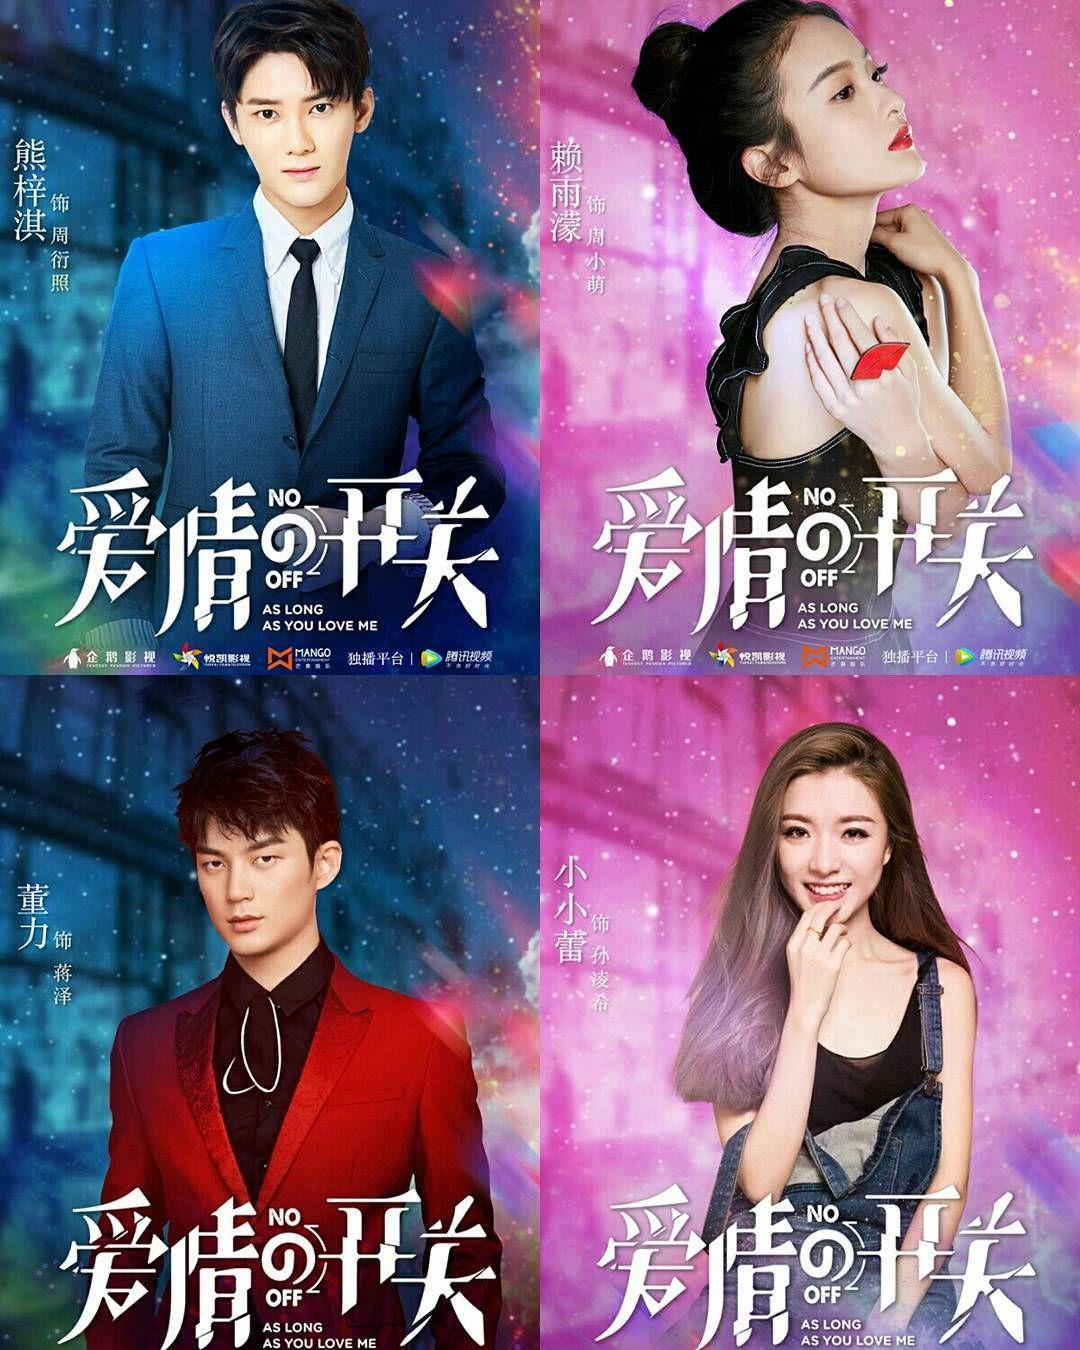 Best Chinese drama image. Drama, Chinese movies, Drama movies